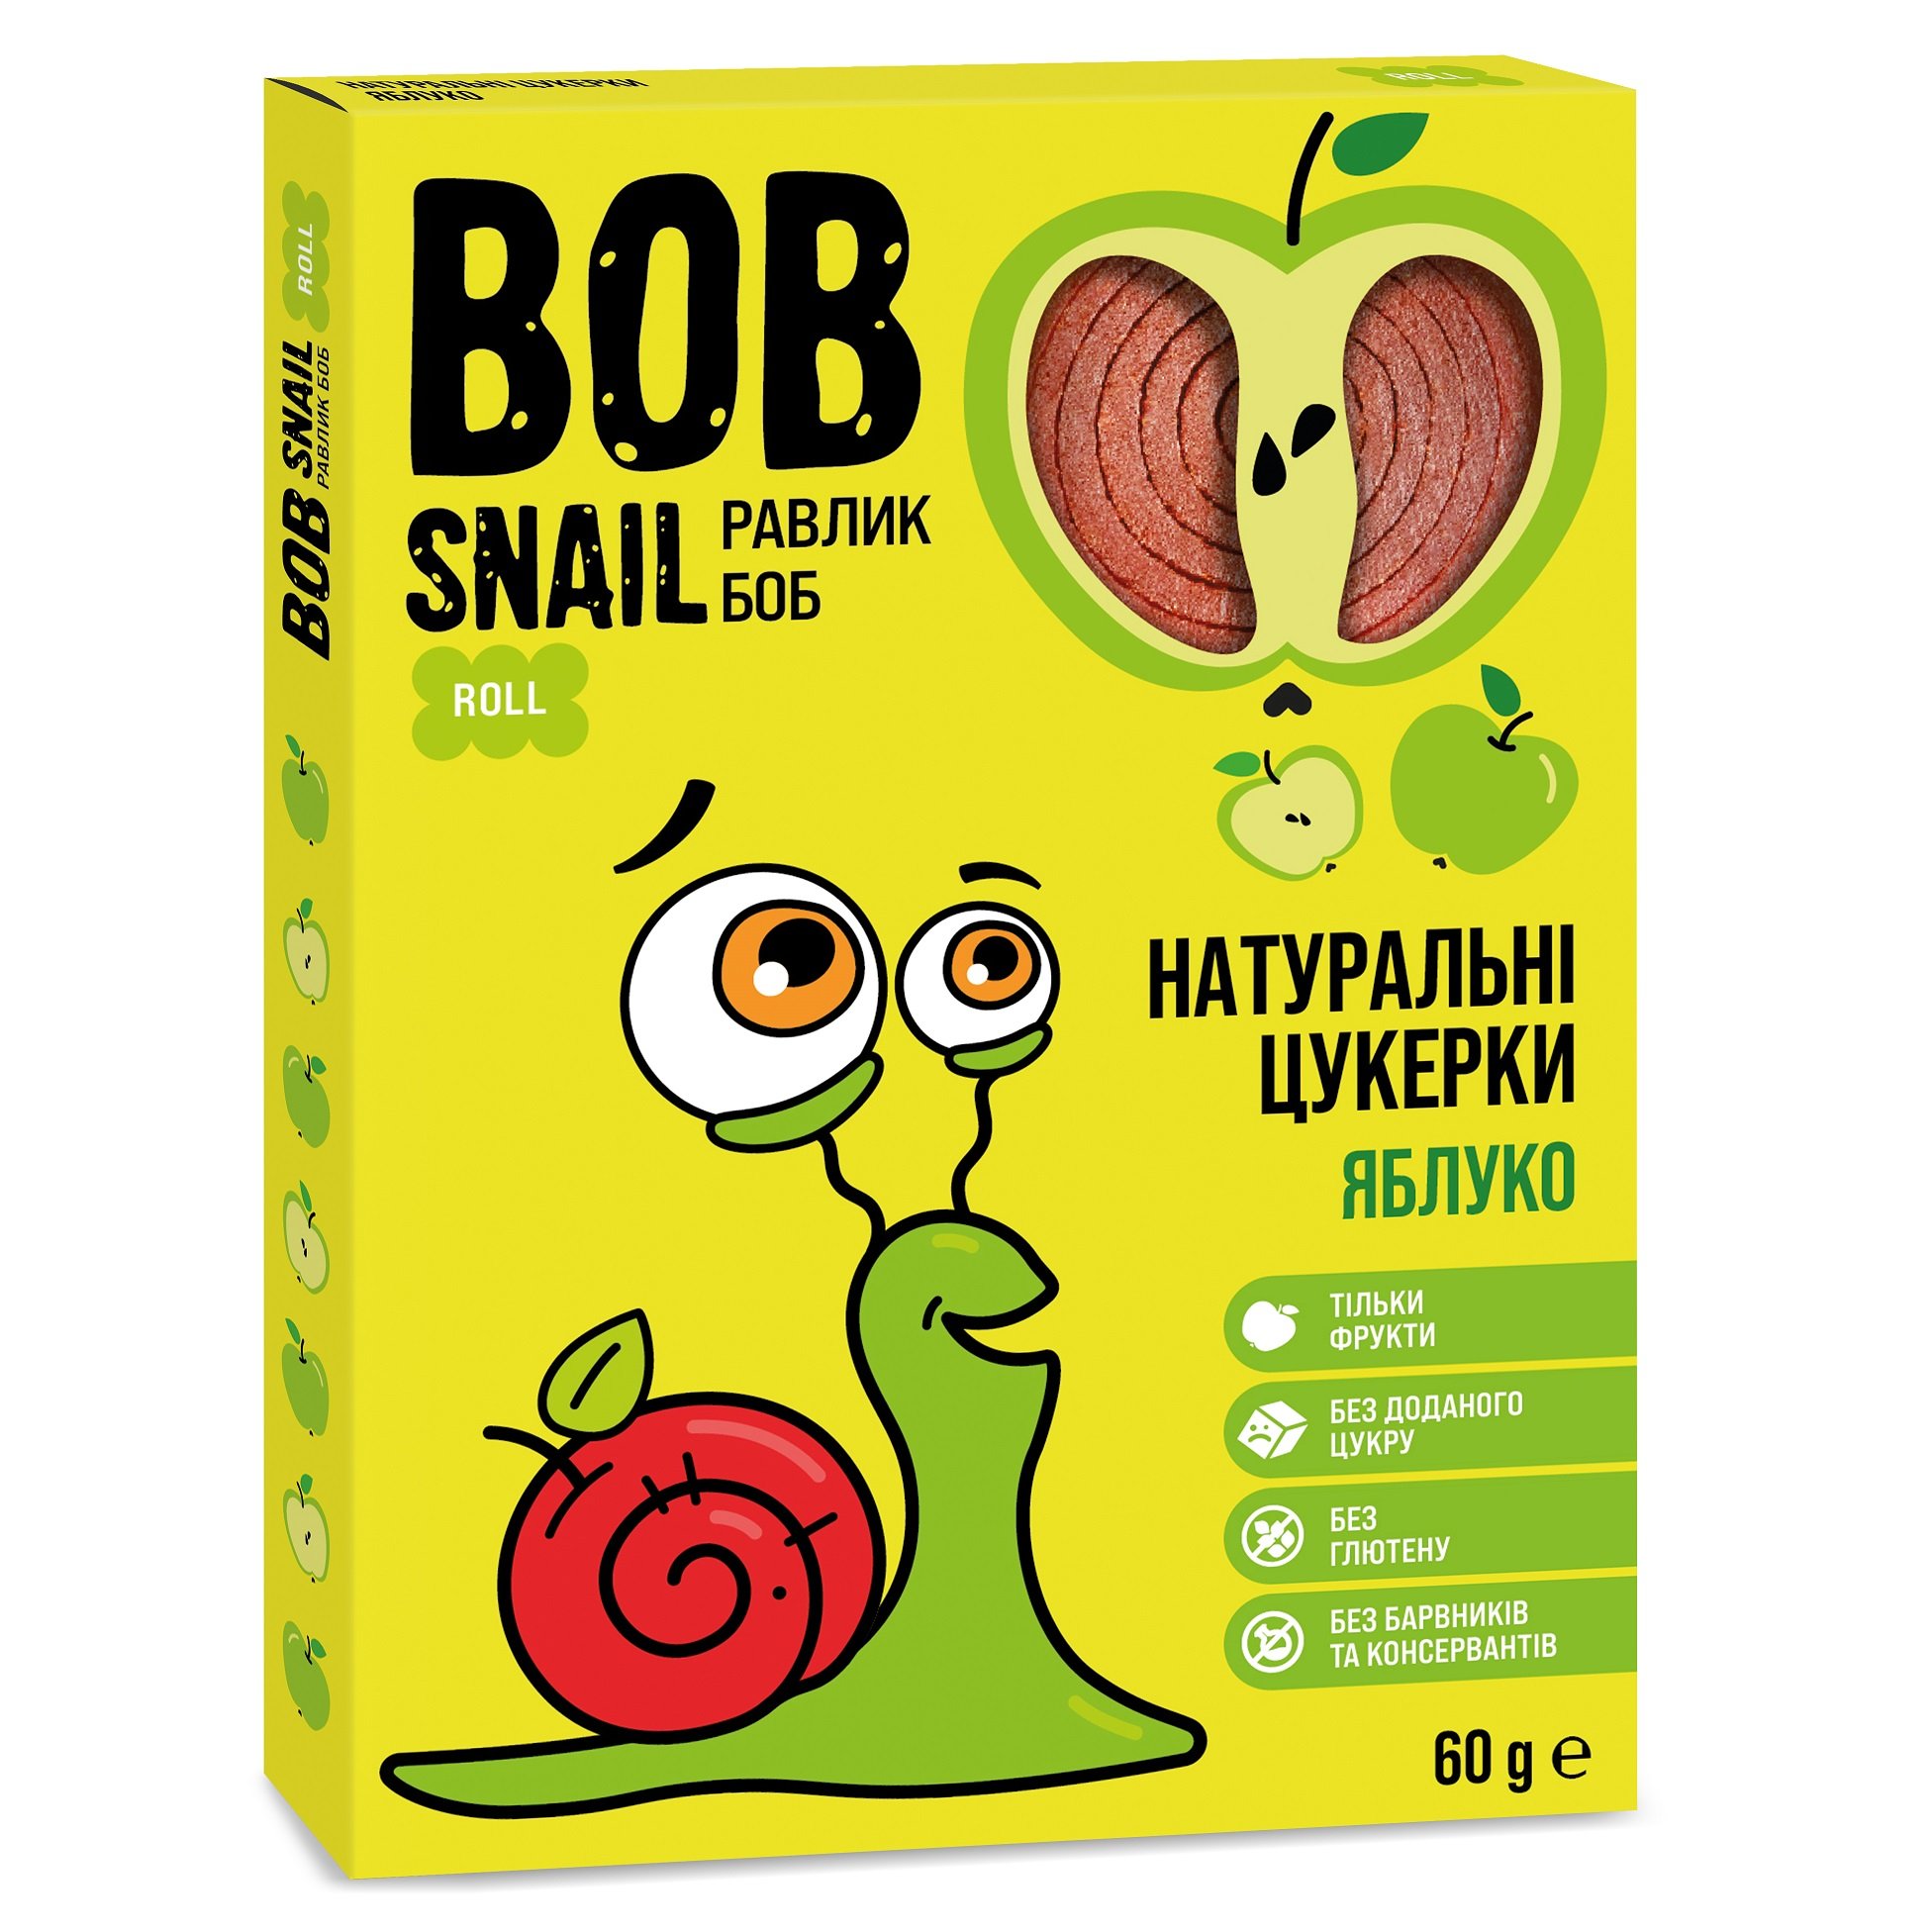 Натуральні цукерки Bob Snail Равлик Боб Яблуко, 60 г - фото 1